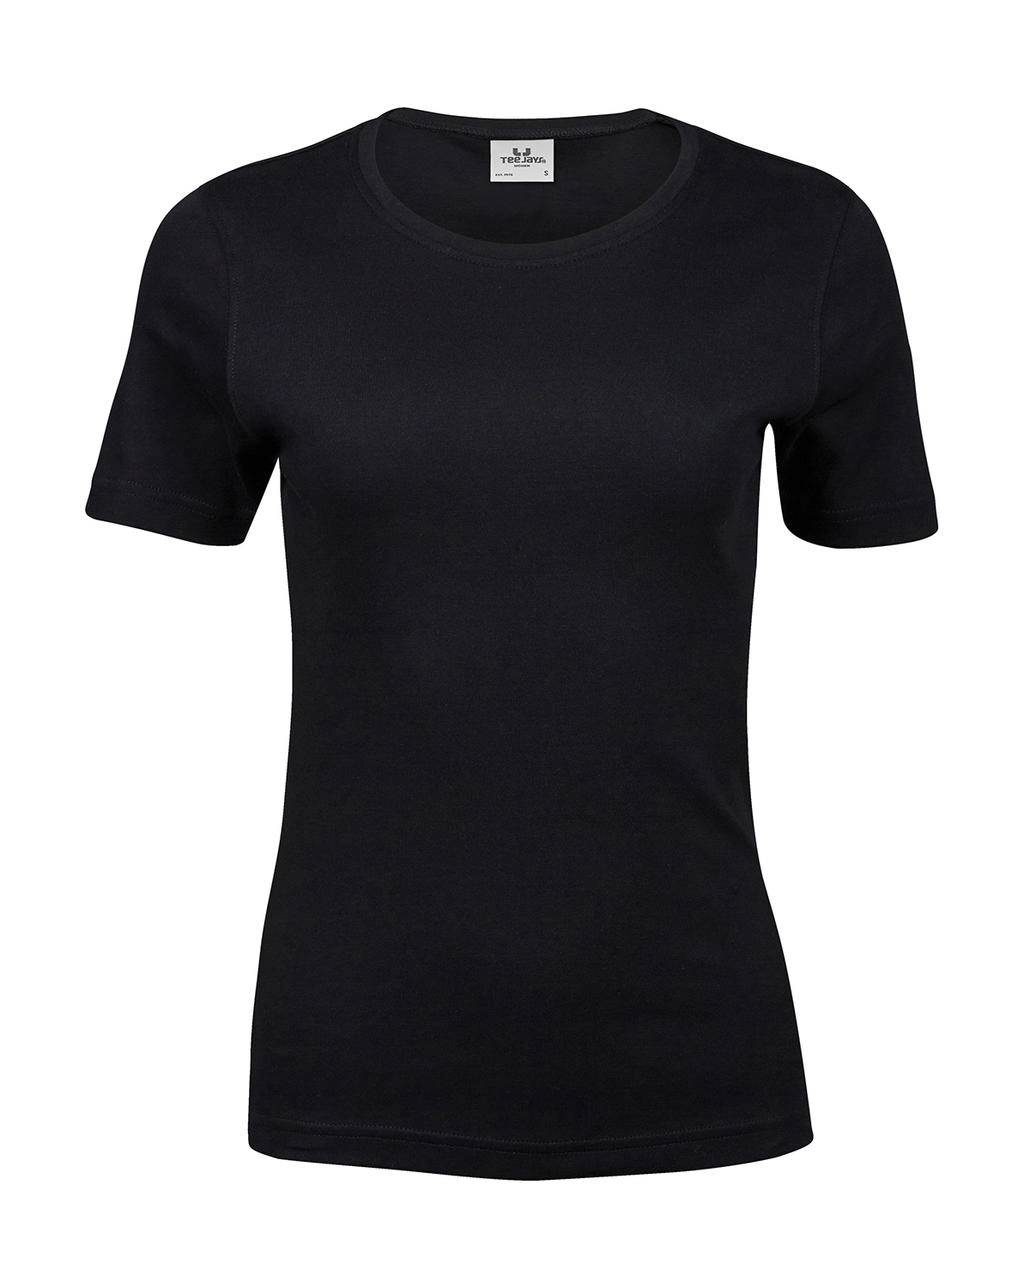 Ladies` Interlock T-Shirt zum Besticken und Bedrucken in der Farbe Black mit Ihren Logo, Schriftzug oder Motiv.